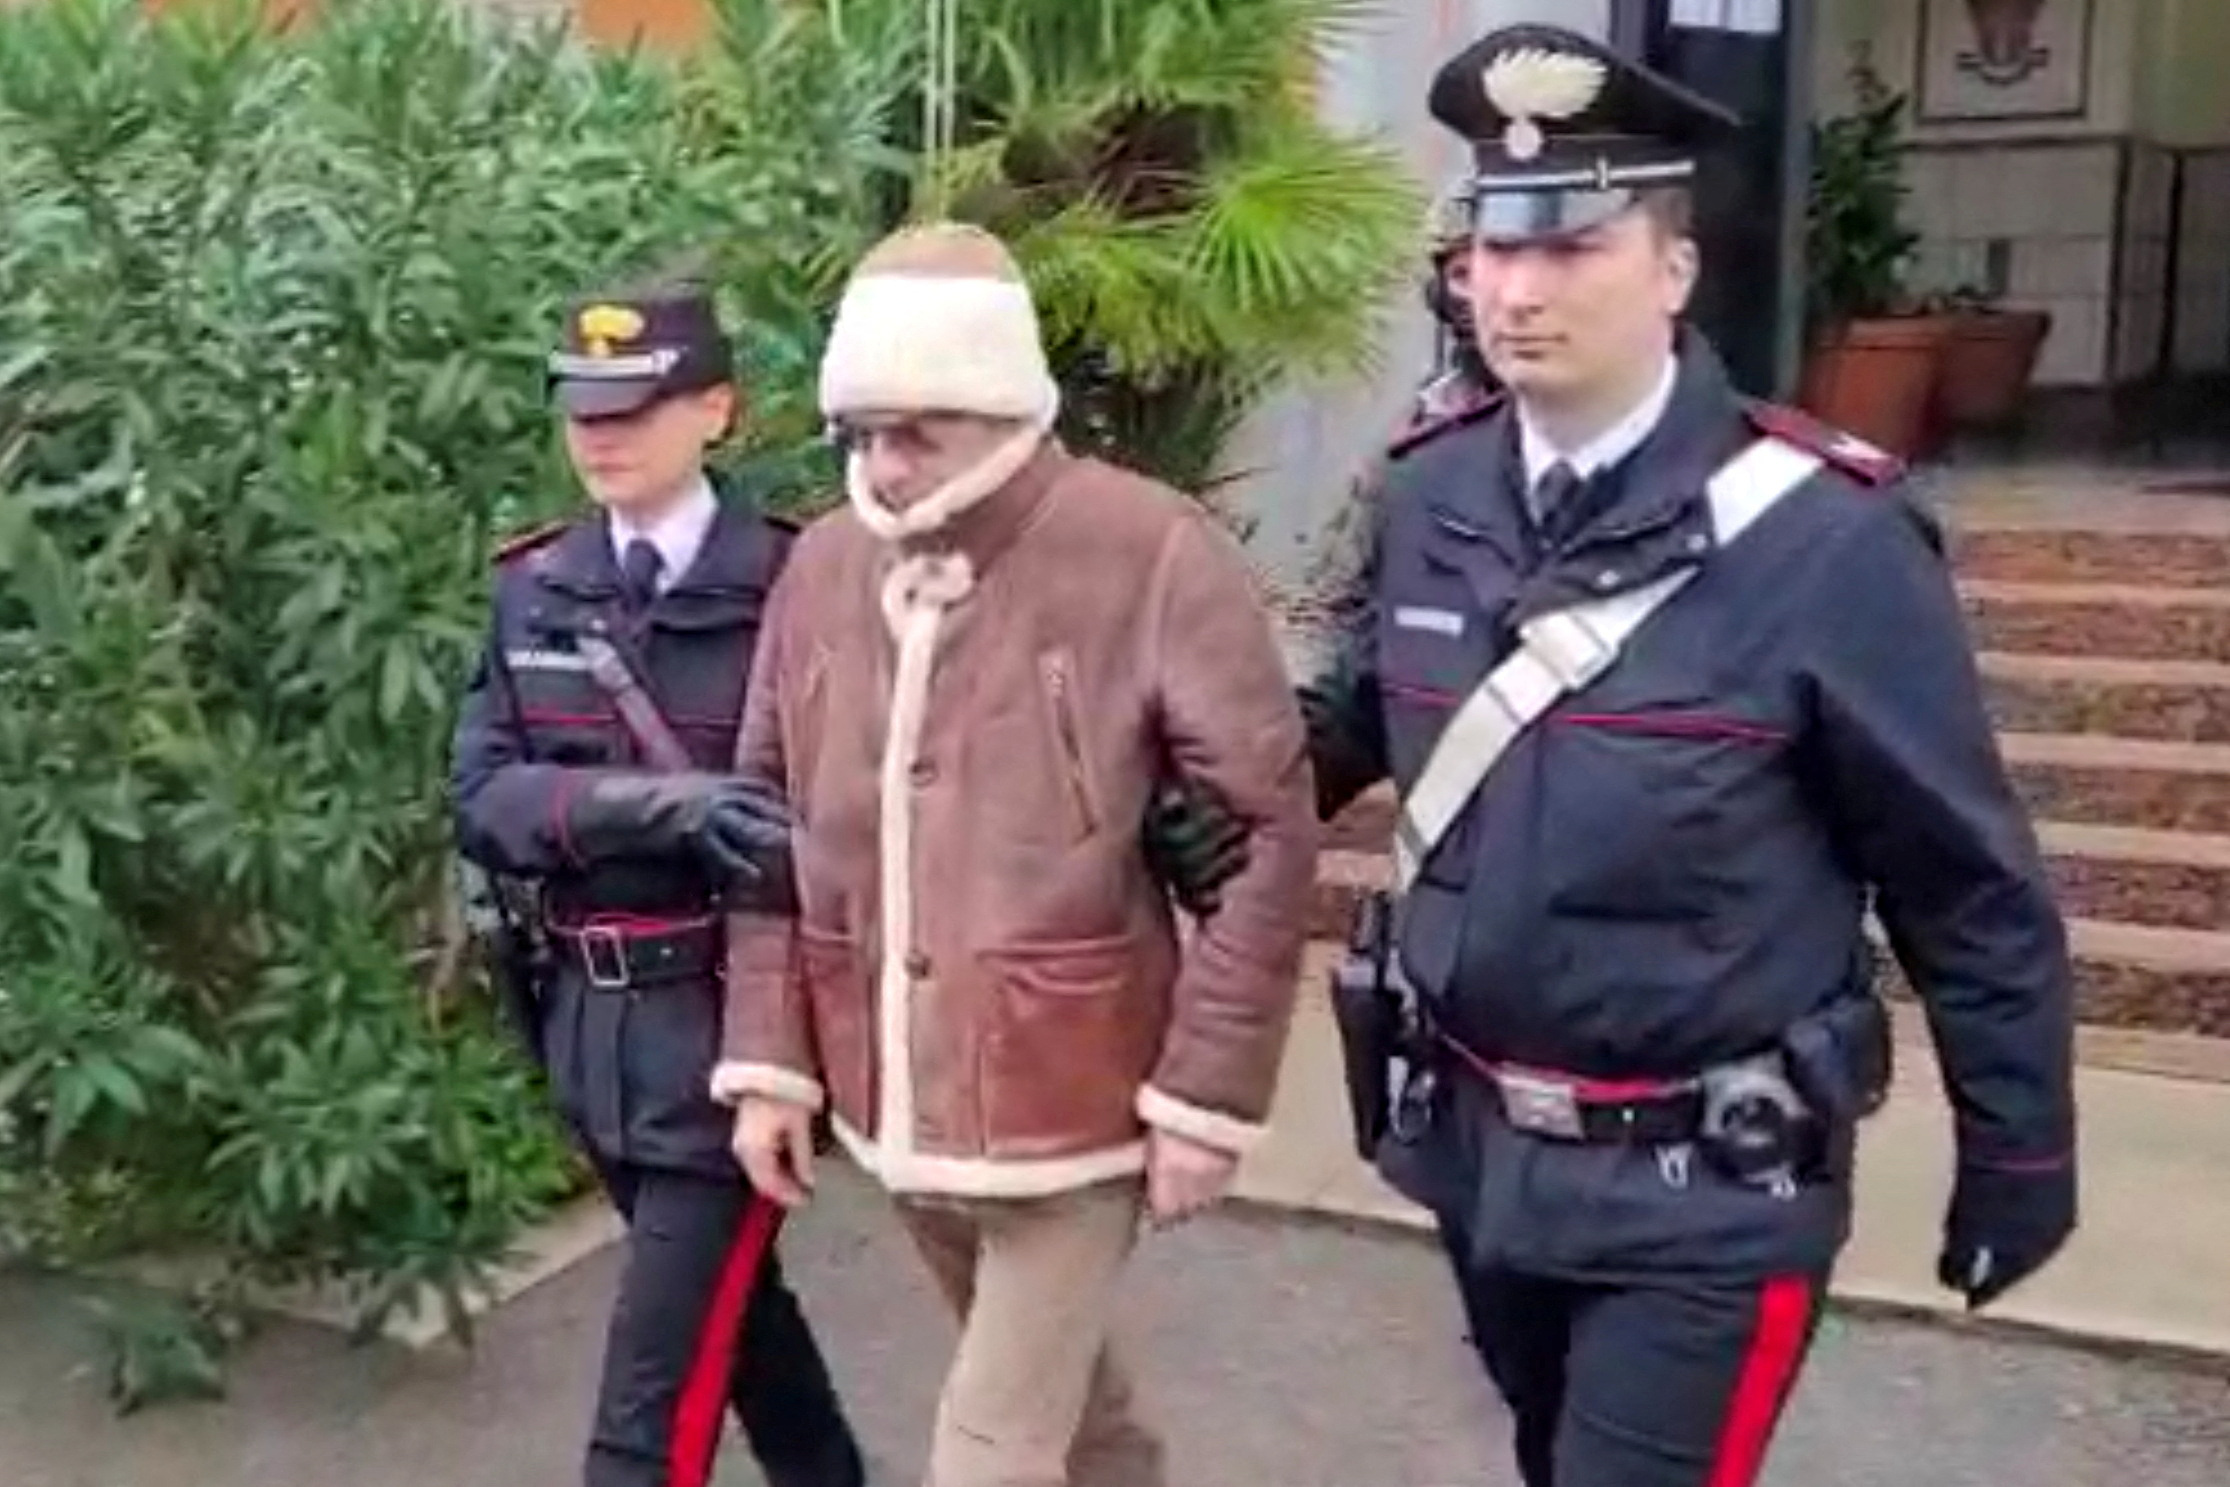 Messina Denaro, jefe de la Cosa Nostra, fue detenido el pasado 16 de enero (Carabinieri/Handout via REUTERS)